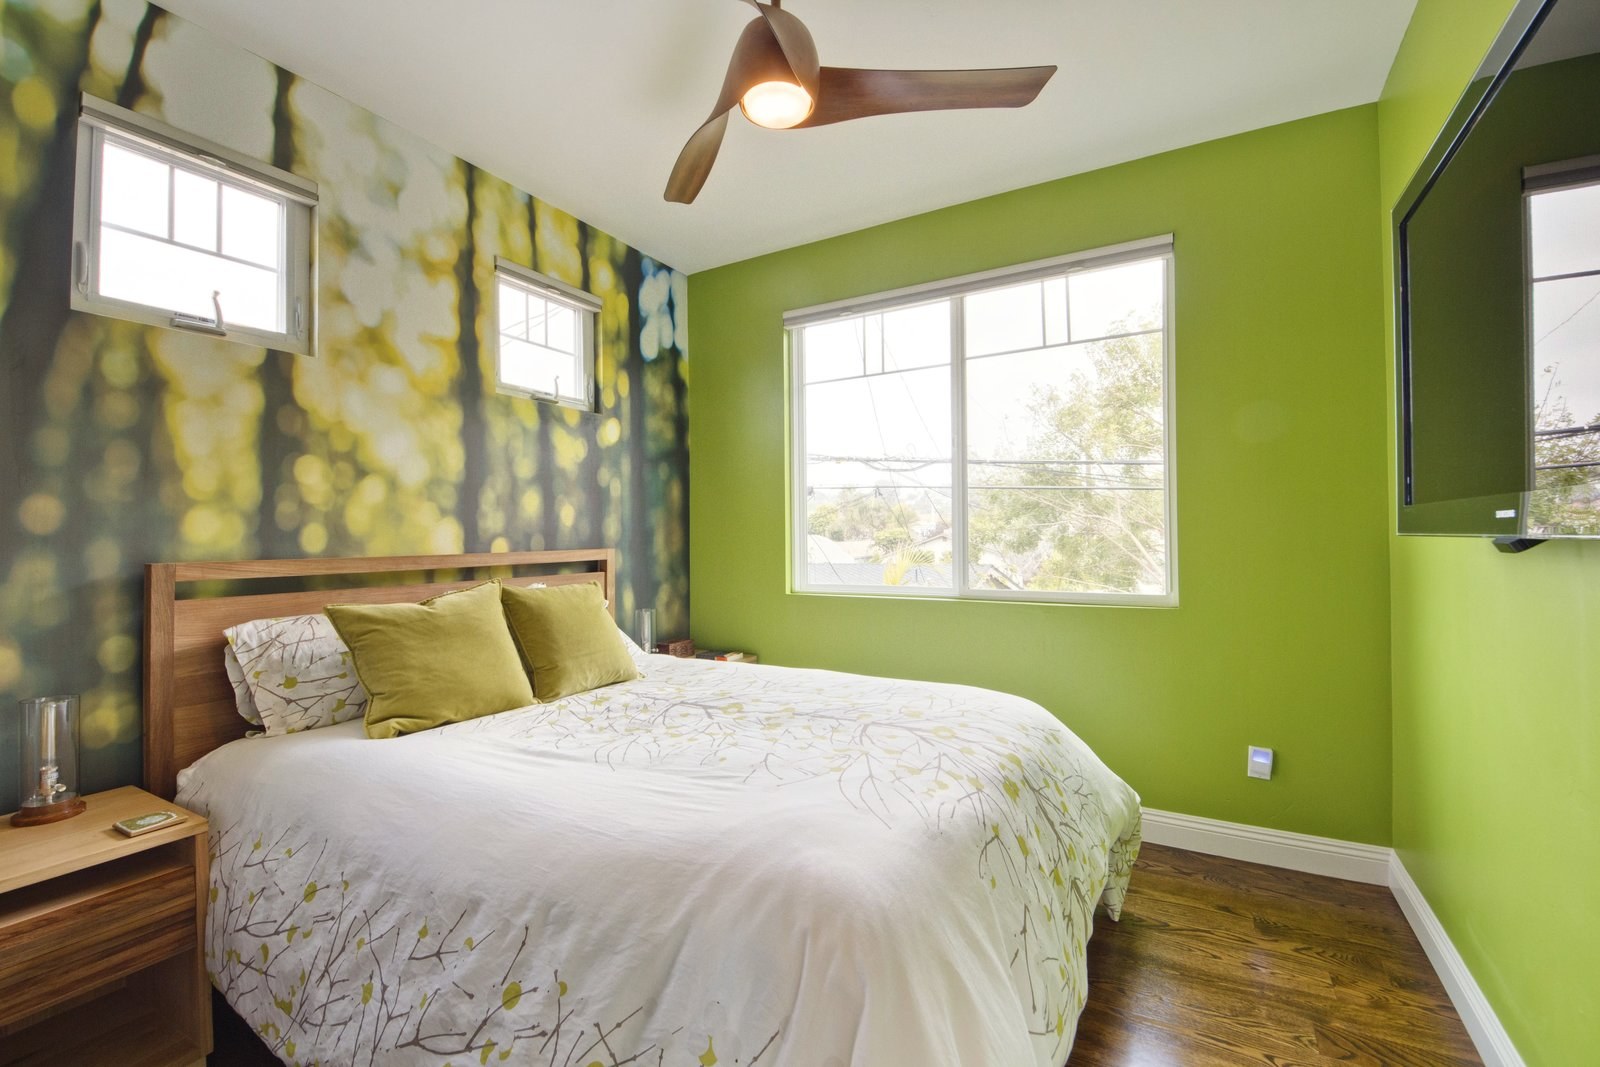 Обои в зеленых тонах. Зеленые стены в спальне. Спальня в зеленых тонах. Салатовые стены. Спальня в ярких тонах.